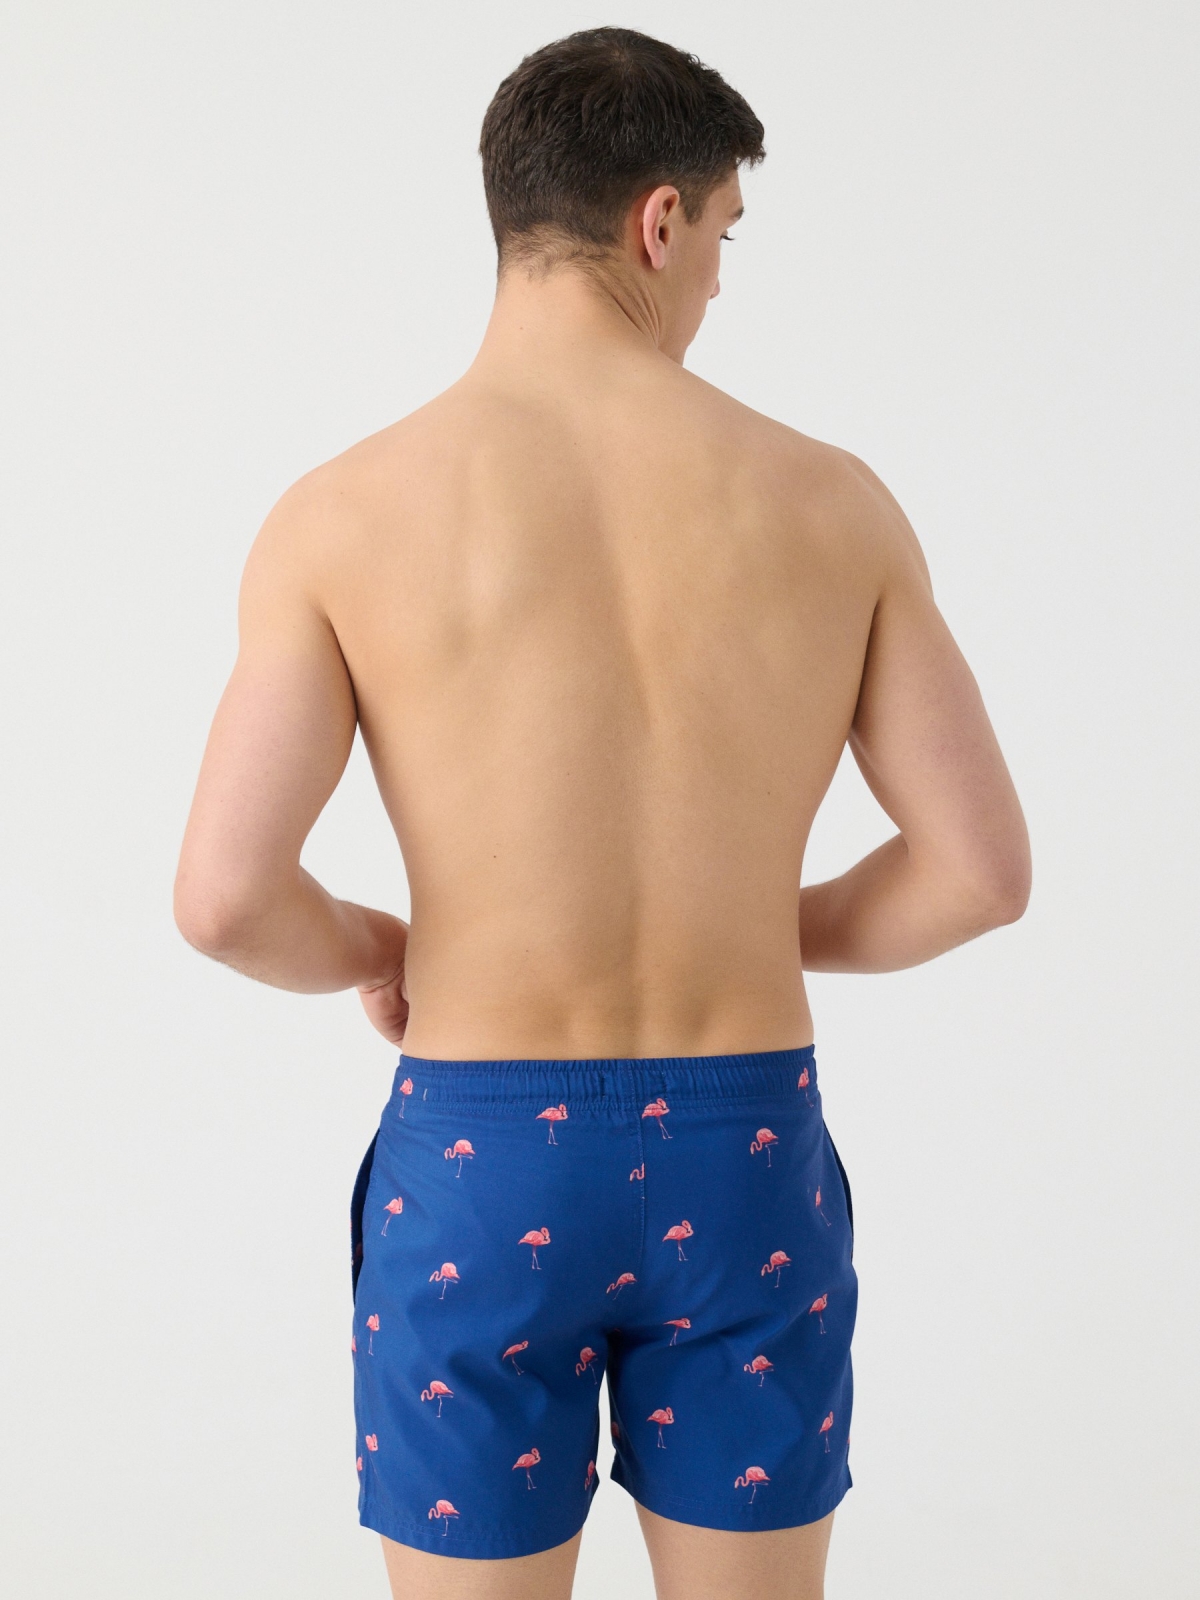 Flamingos print swimsuit ducat blue middle back view